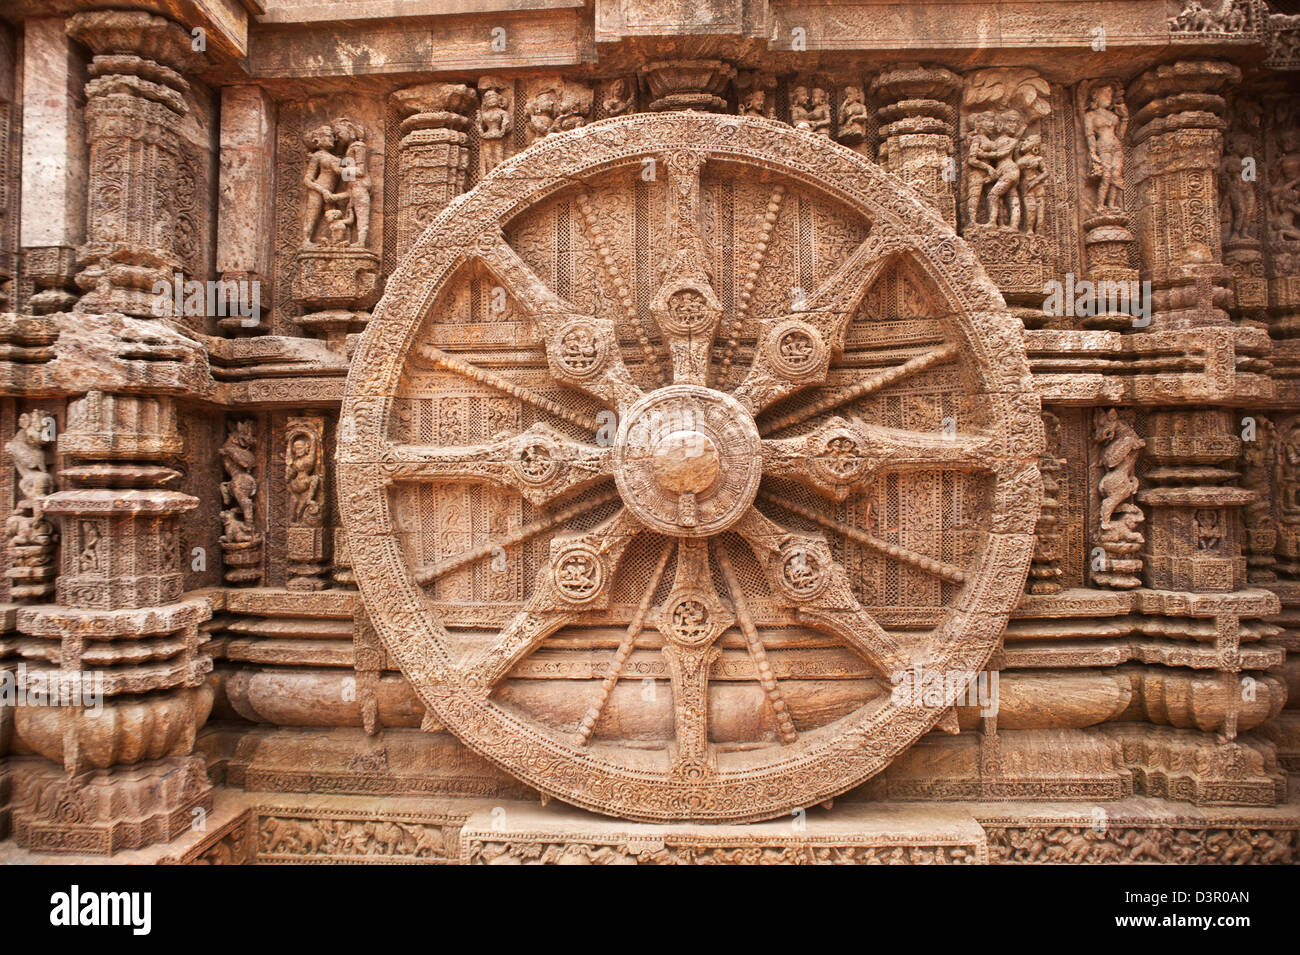 Les détails de la sculpture d'une roue à un temple, Temple du Soleil de Konark, Puri, Orissa, Inde Banque D'Images